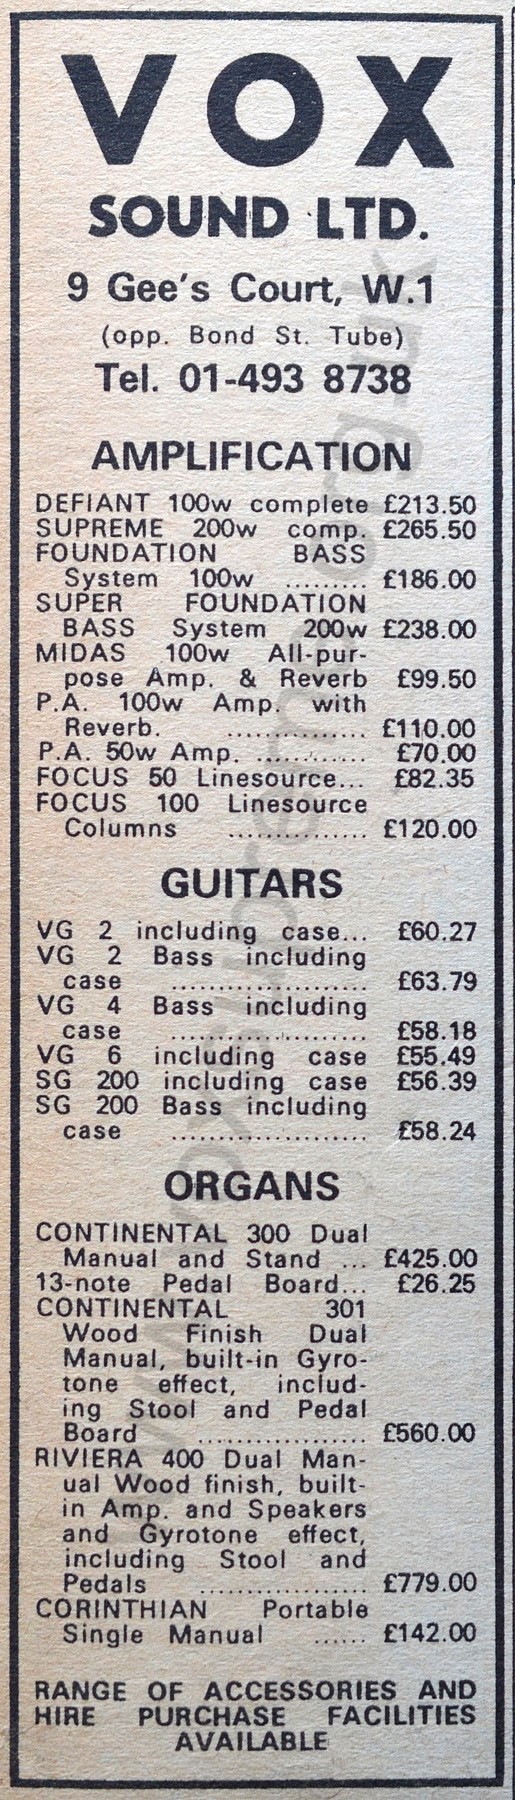 Melody Maker, 23rd October, 1971